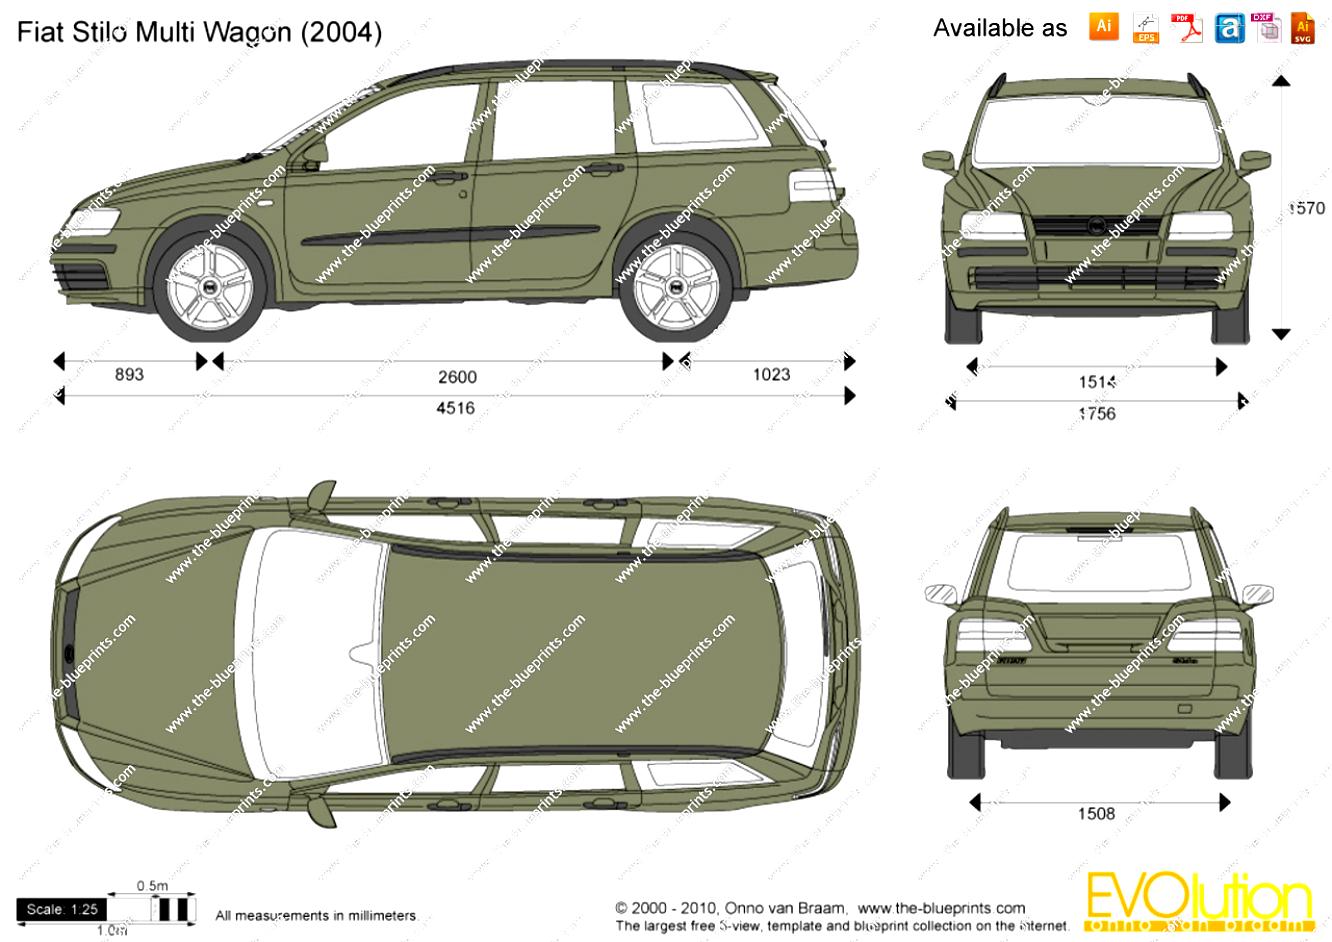 Fiat Stilo Multi Wagon 06 On Motoimg Com